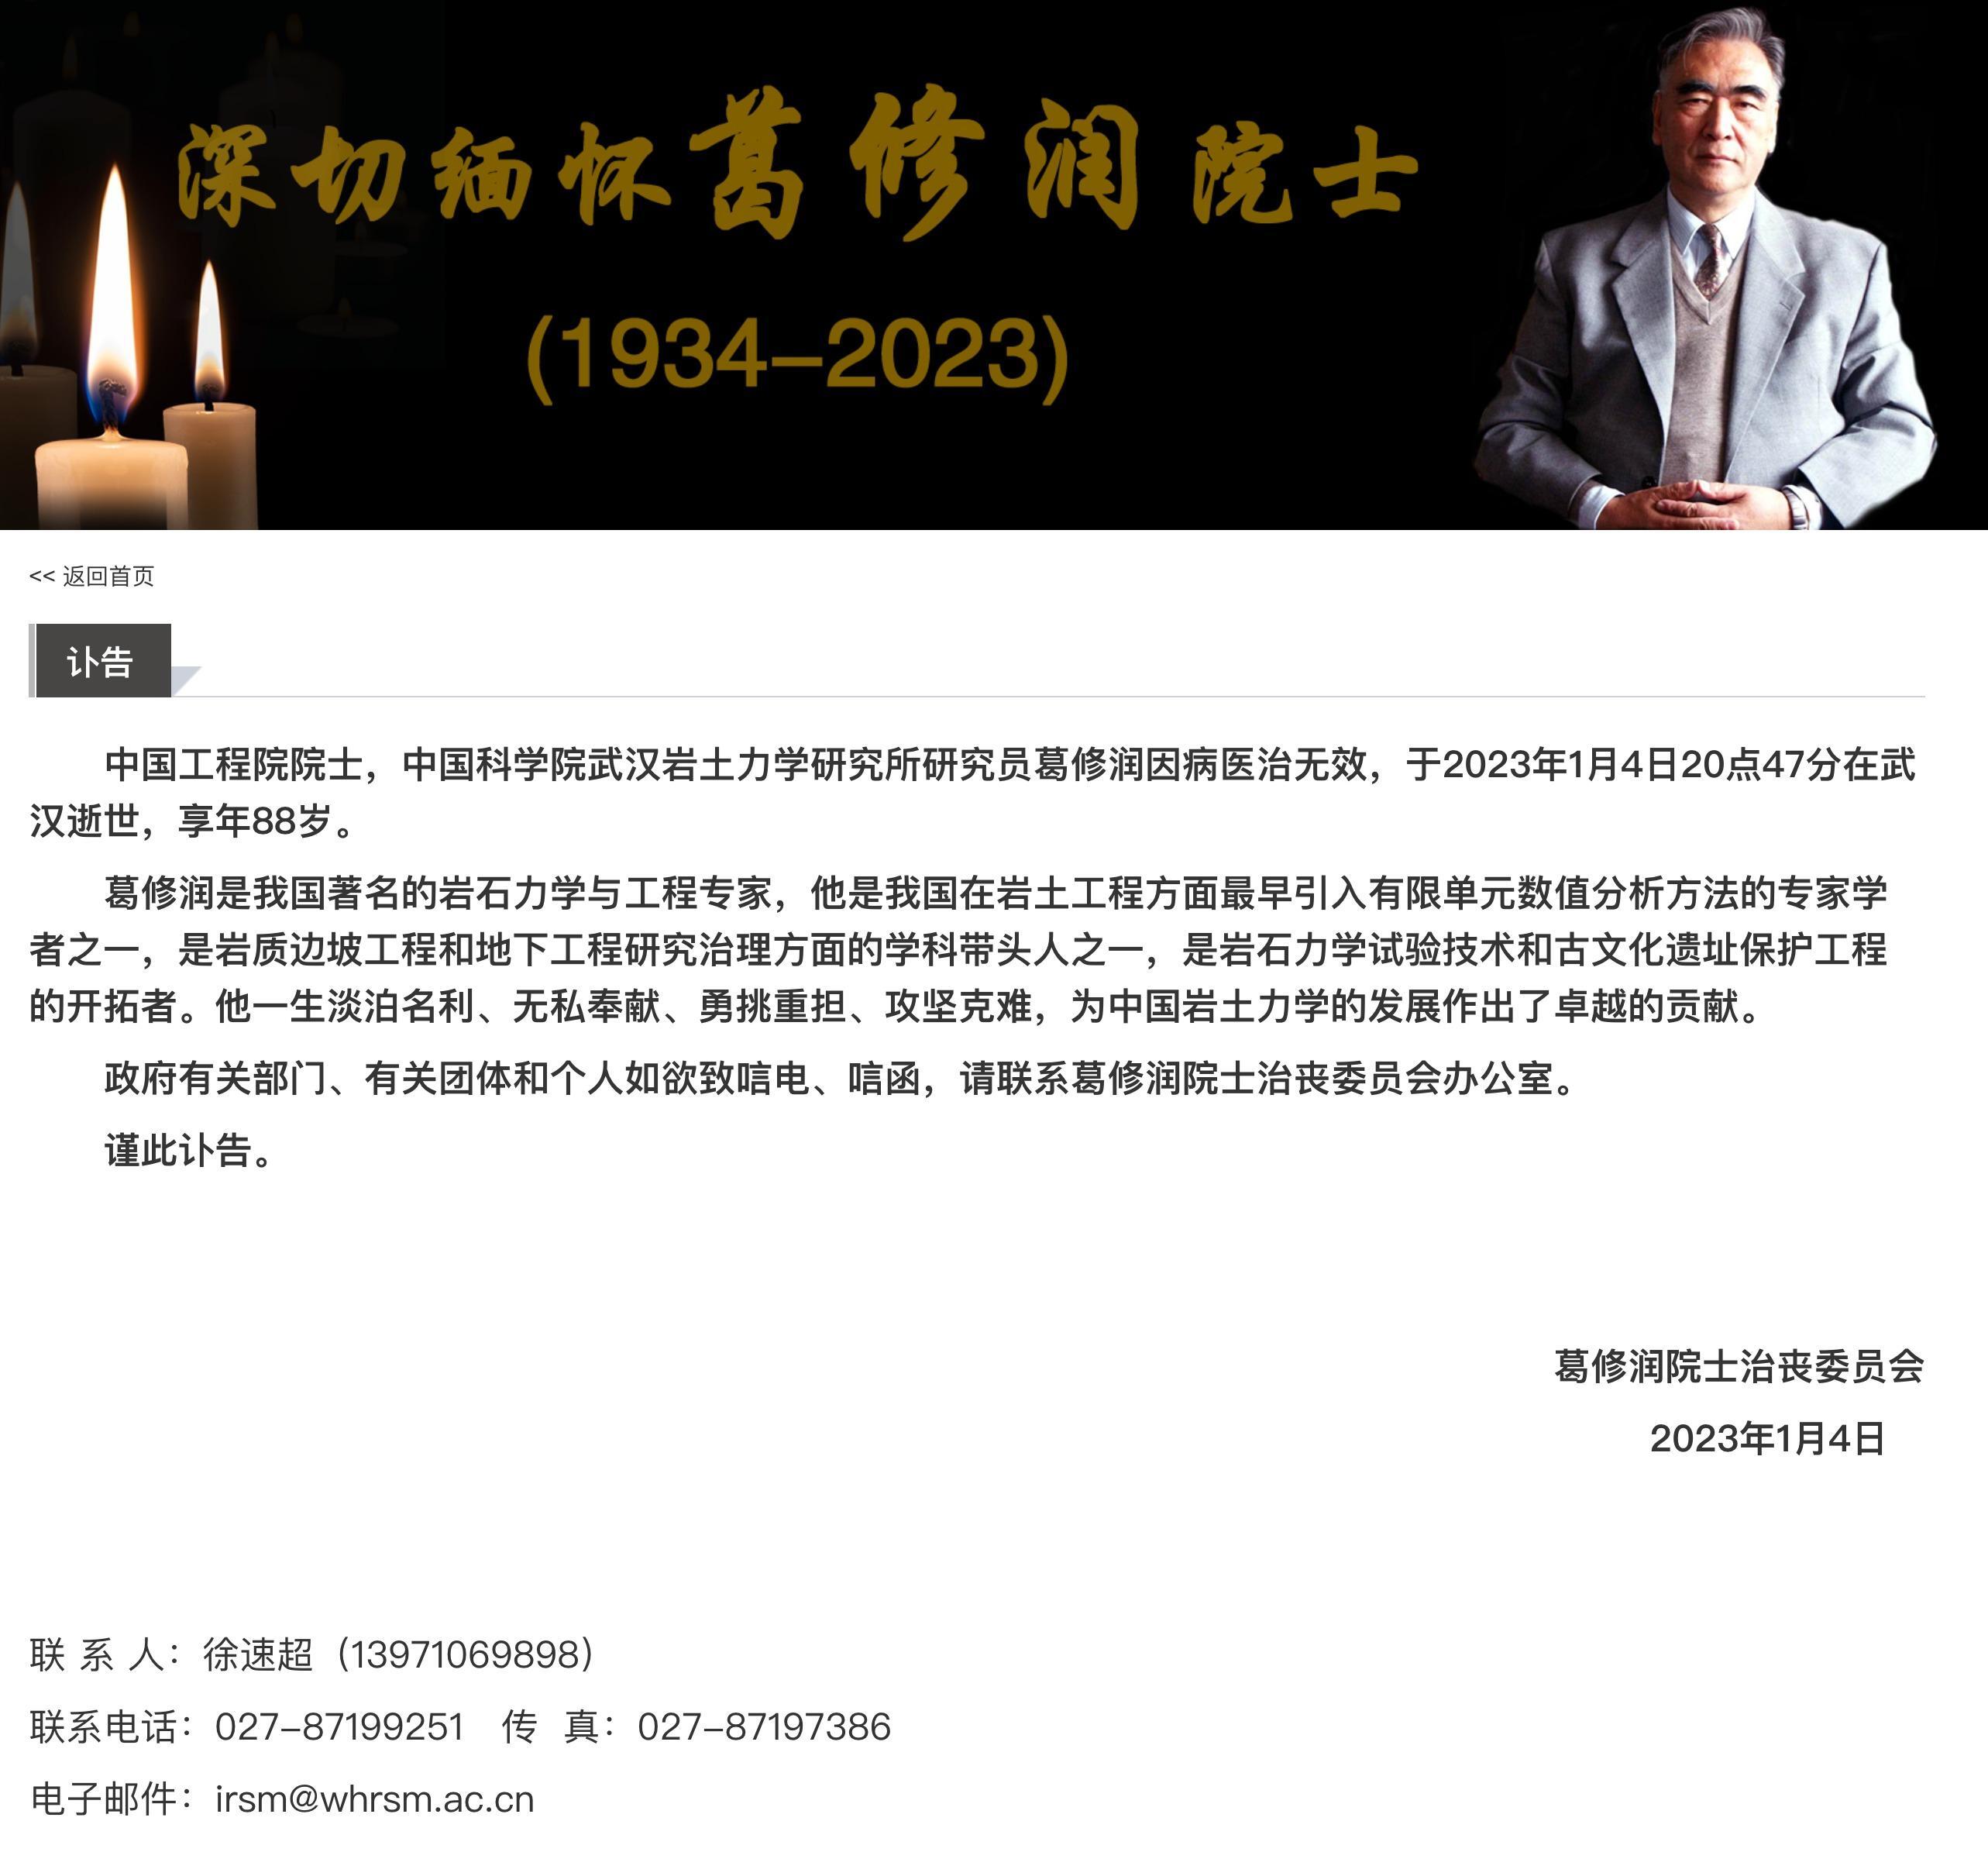 中国工程院院士葛修润逝世,究竟是怎么一回事?